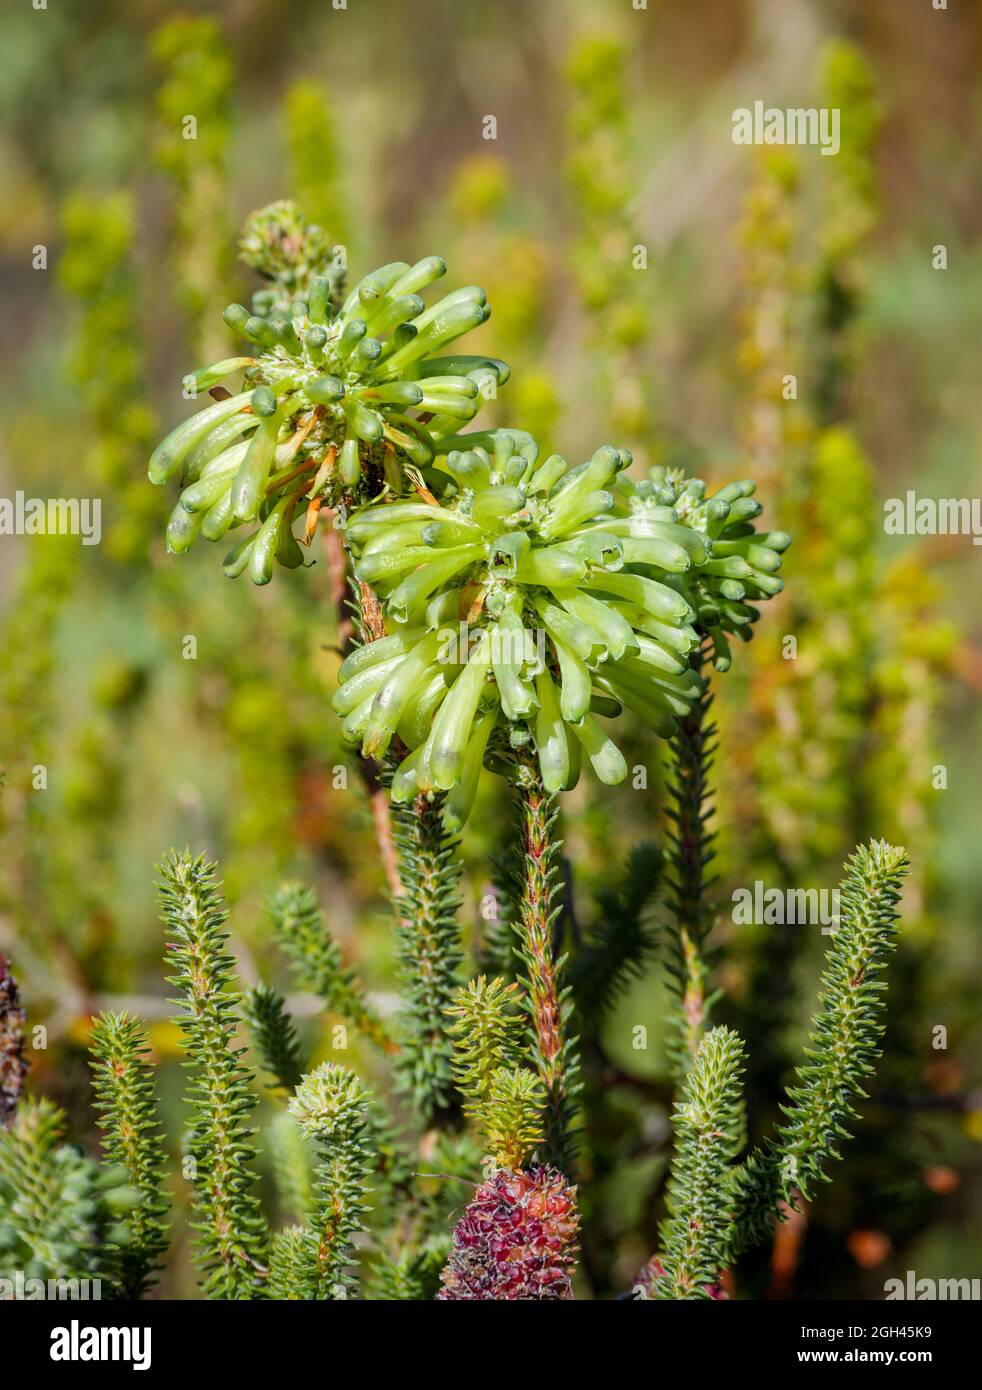 Número de imagen G9R396701-Editar. Brea verde, brea blanca, groenheide, groenbottelheide (Erica sessiliflora). Cabo Occidental. Sudáfrica Foto de stock